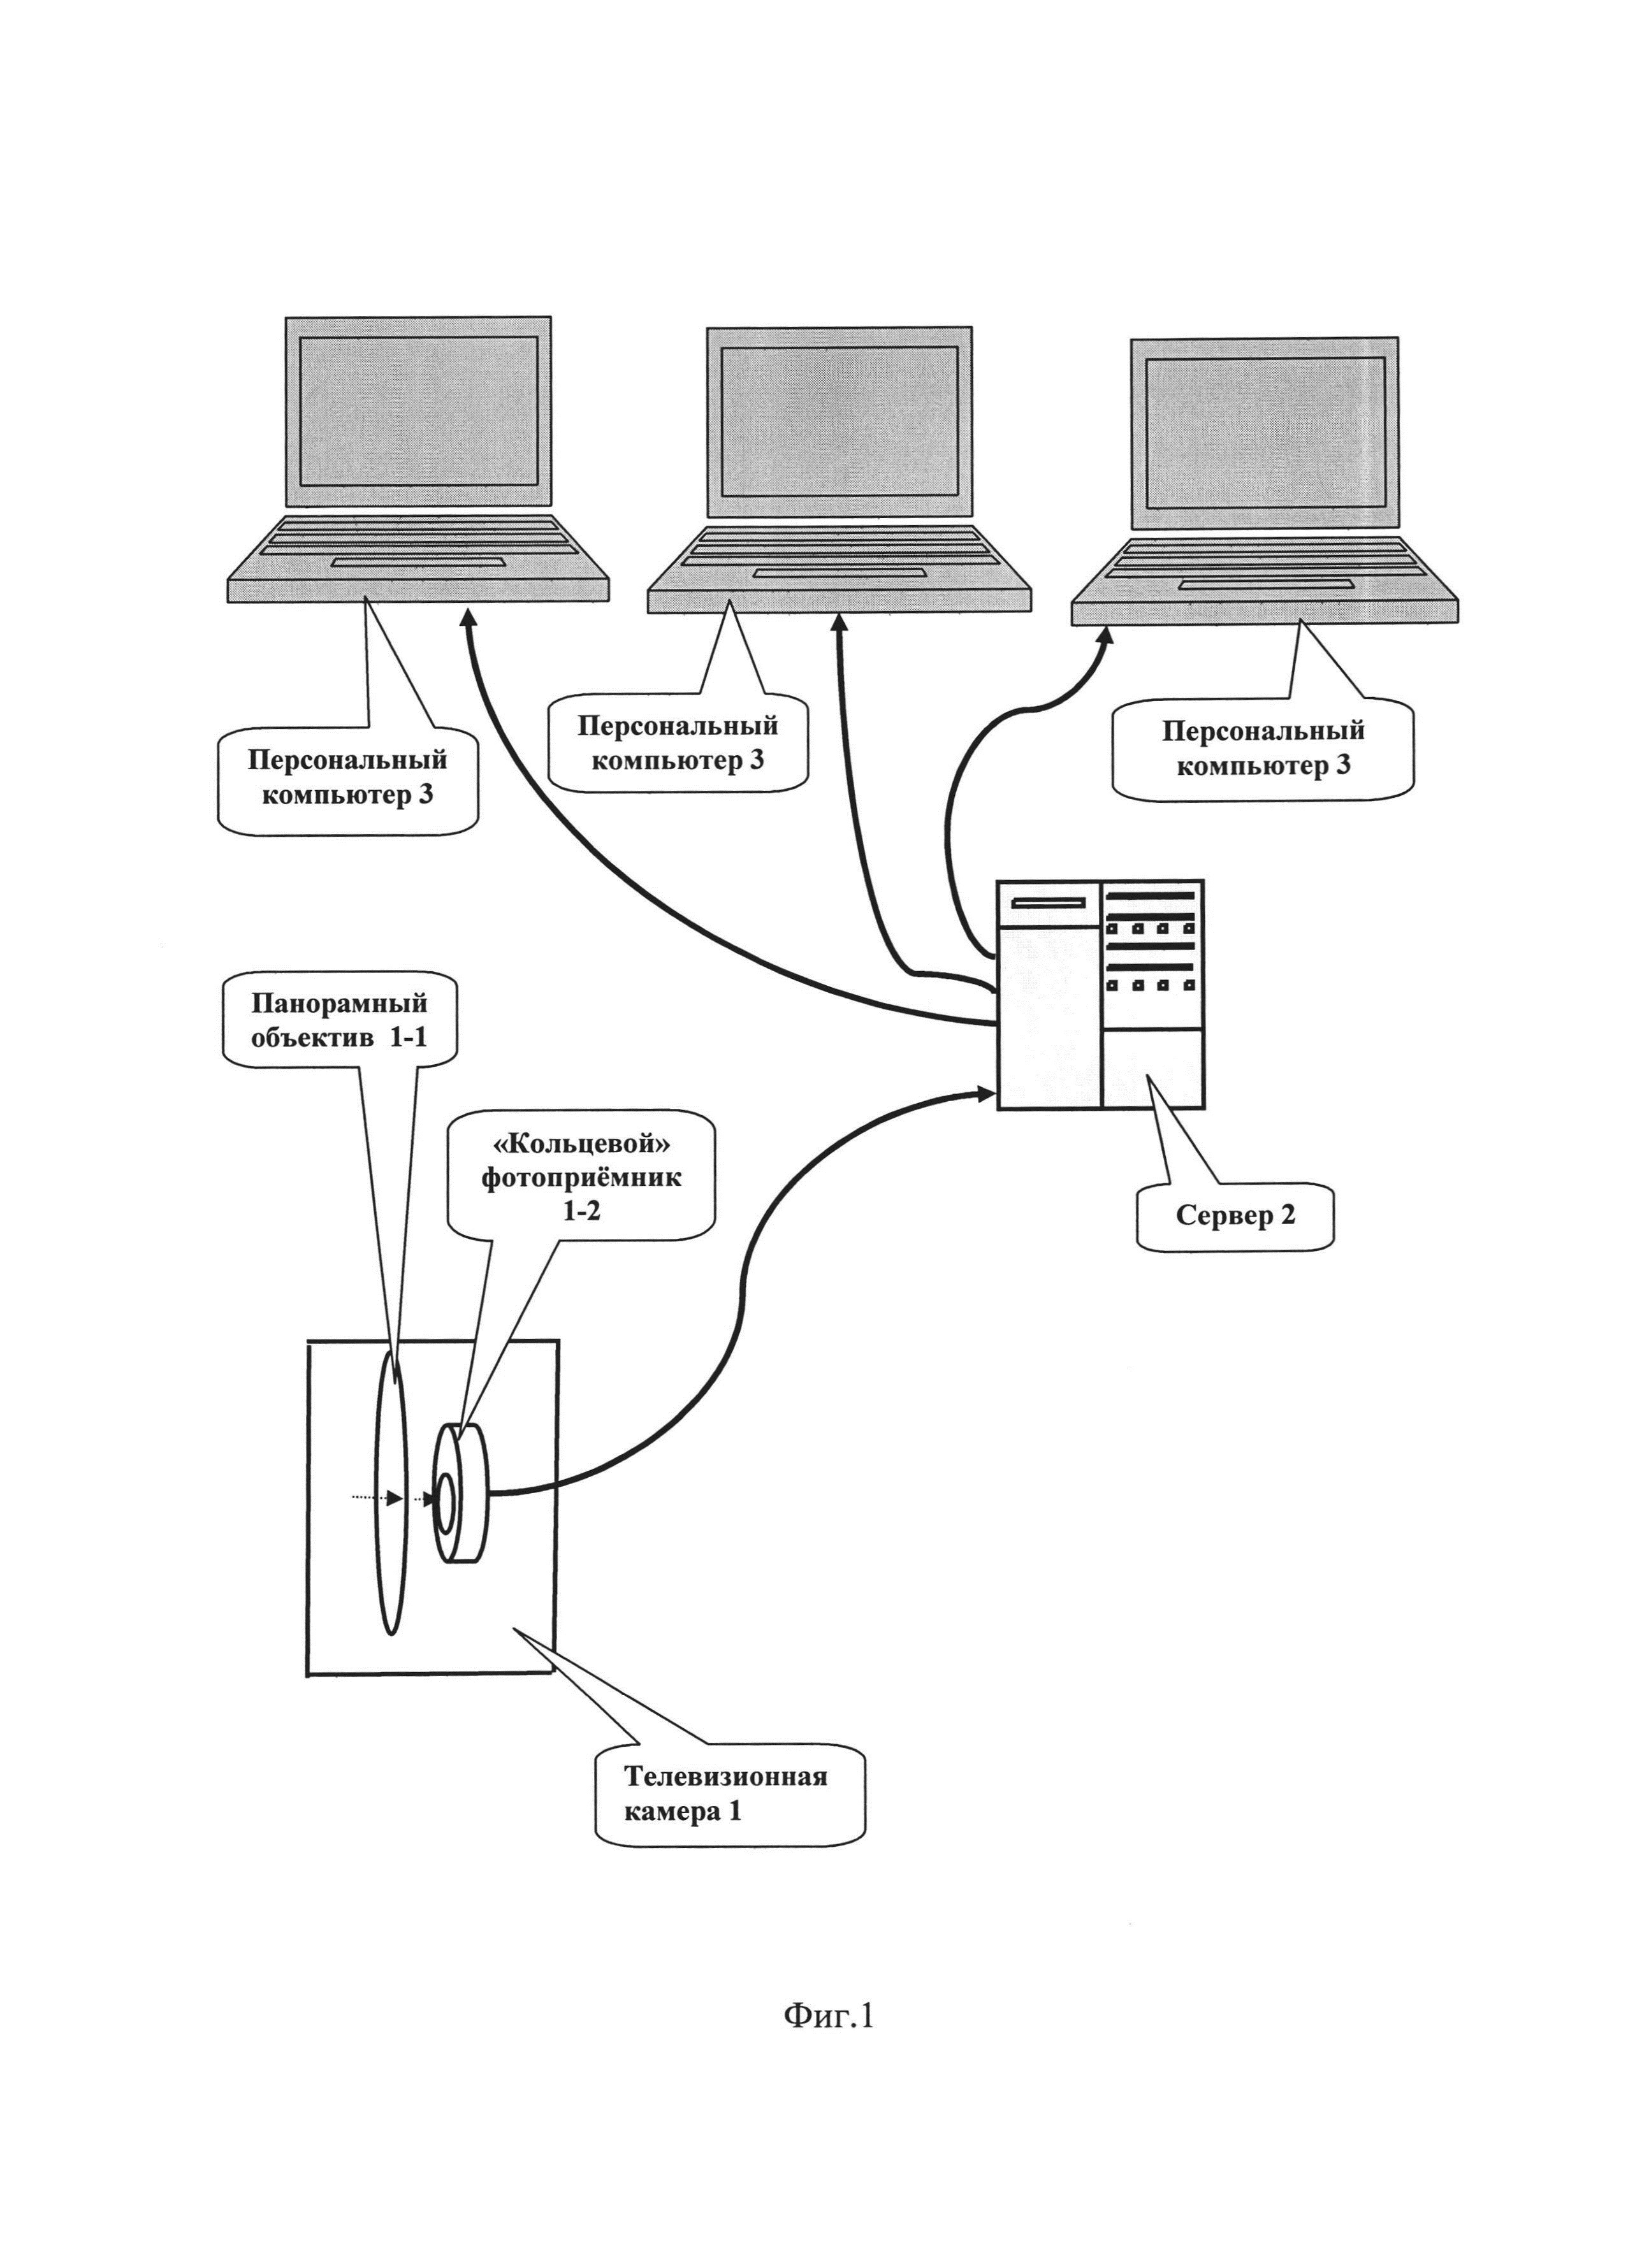 Устройство компьютерной системы панорамного телевизионного наблюдения